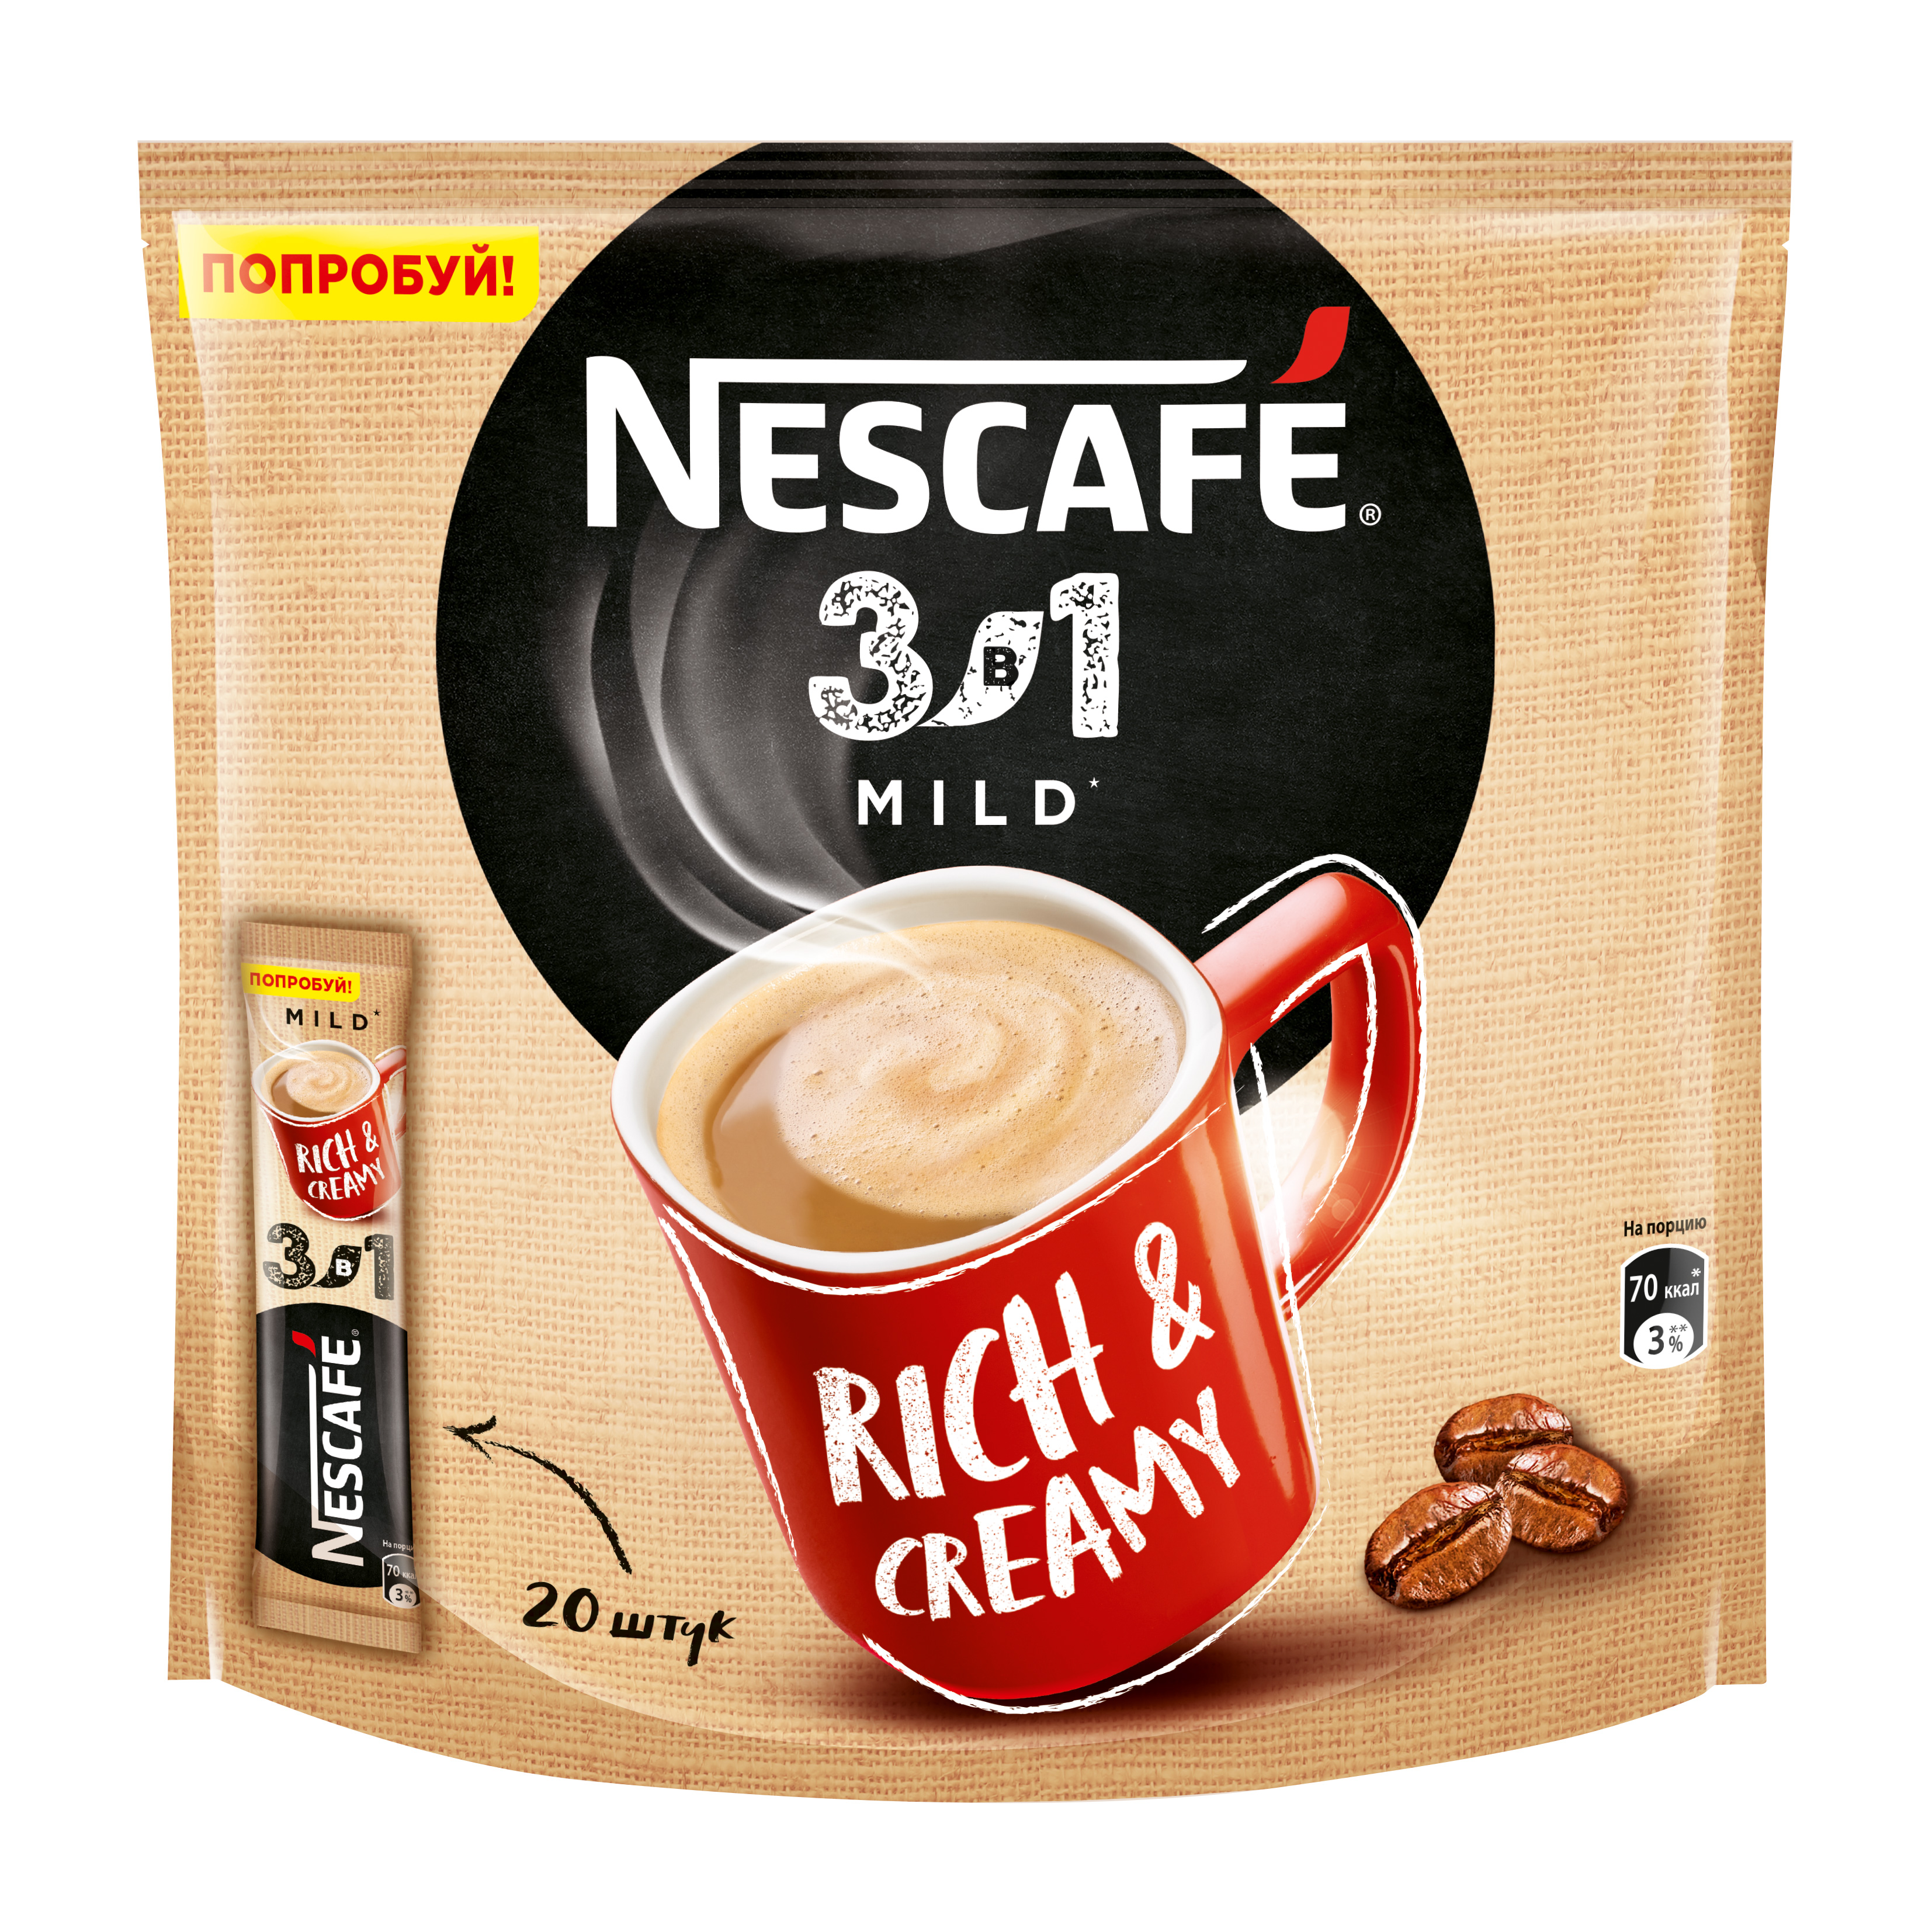 Perfect coffee 3d. Nescafe 3 в 1 mild. Кофе Нескафе в пакетиках 3 в 1. Кофе 3 в 1 Нескафе латте. Растворимый кофе в пакетиках Нескафе 3 в 1.